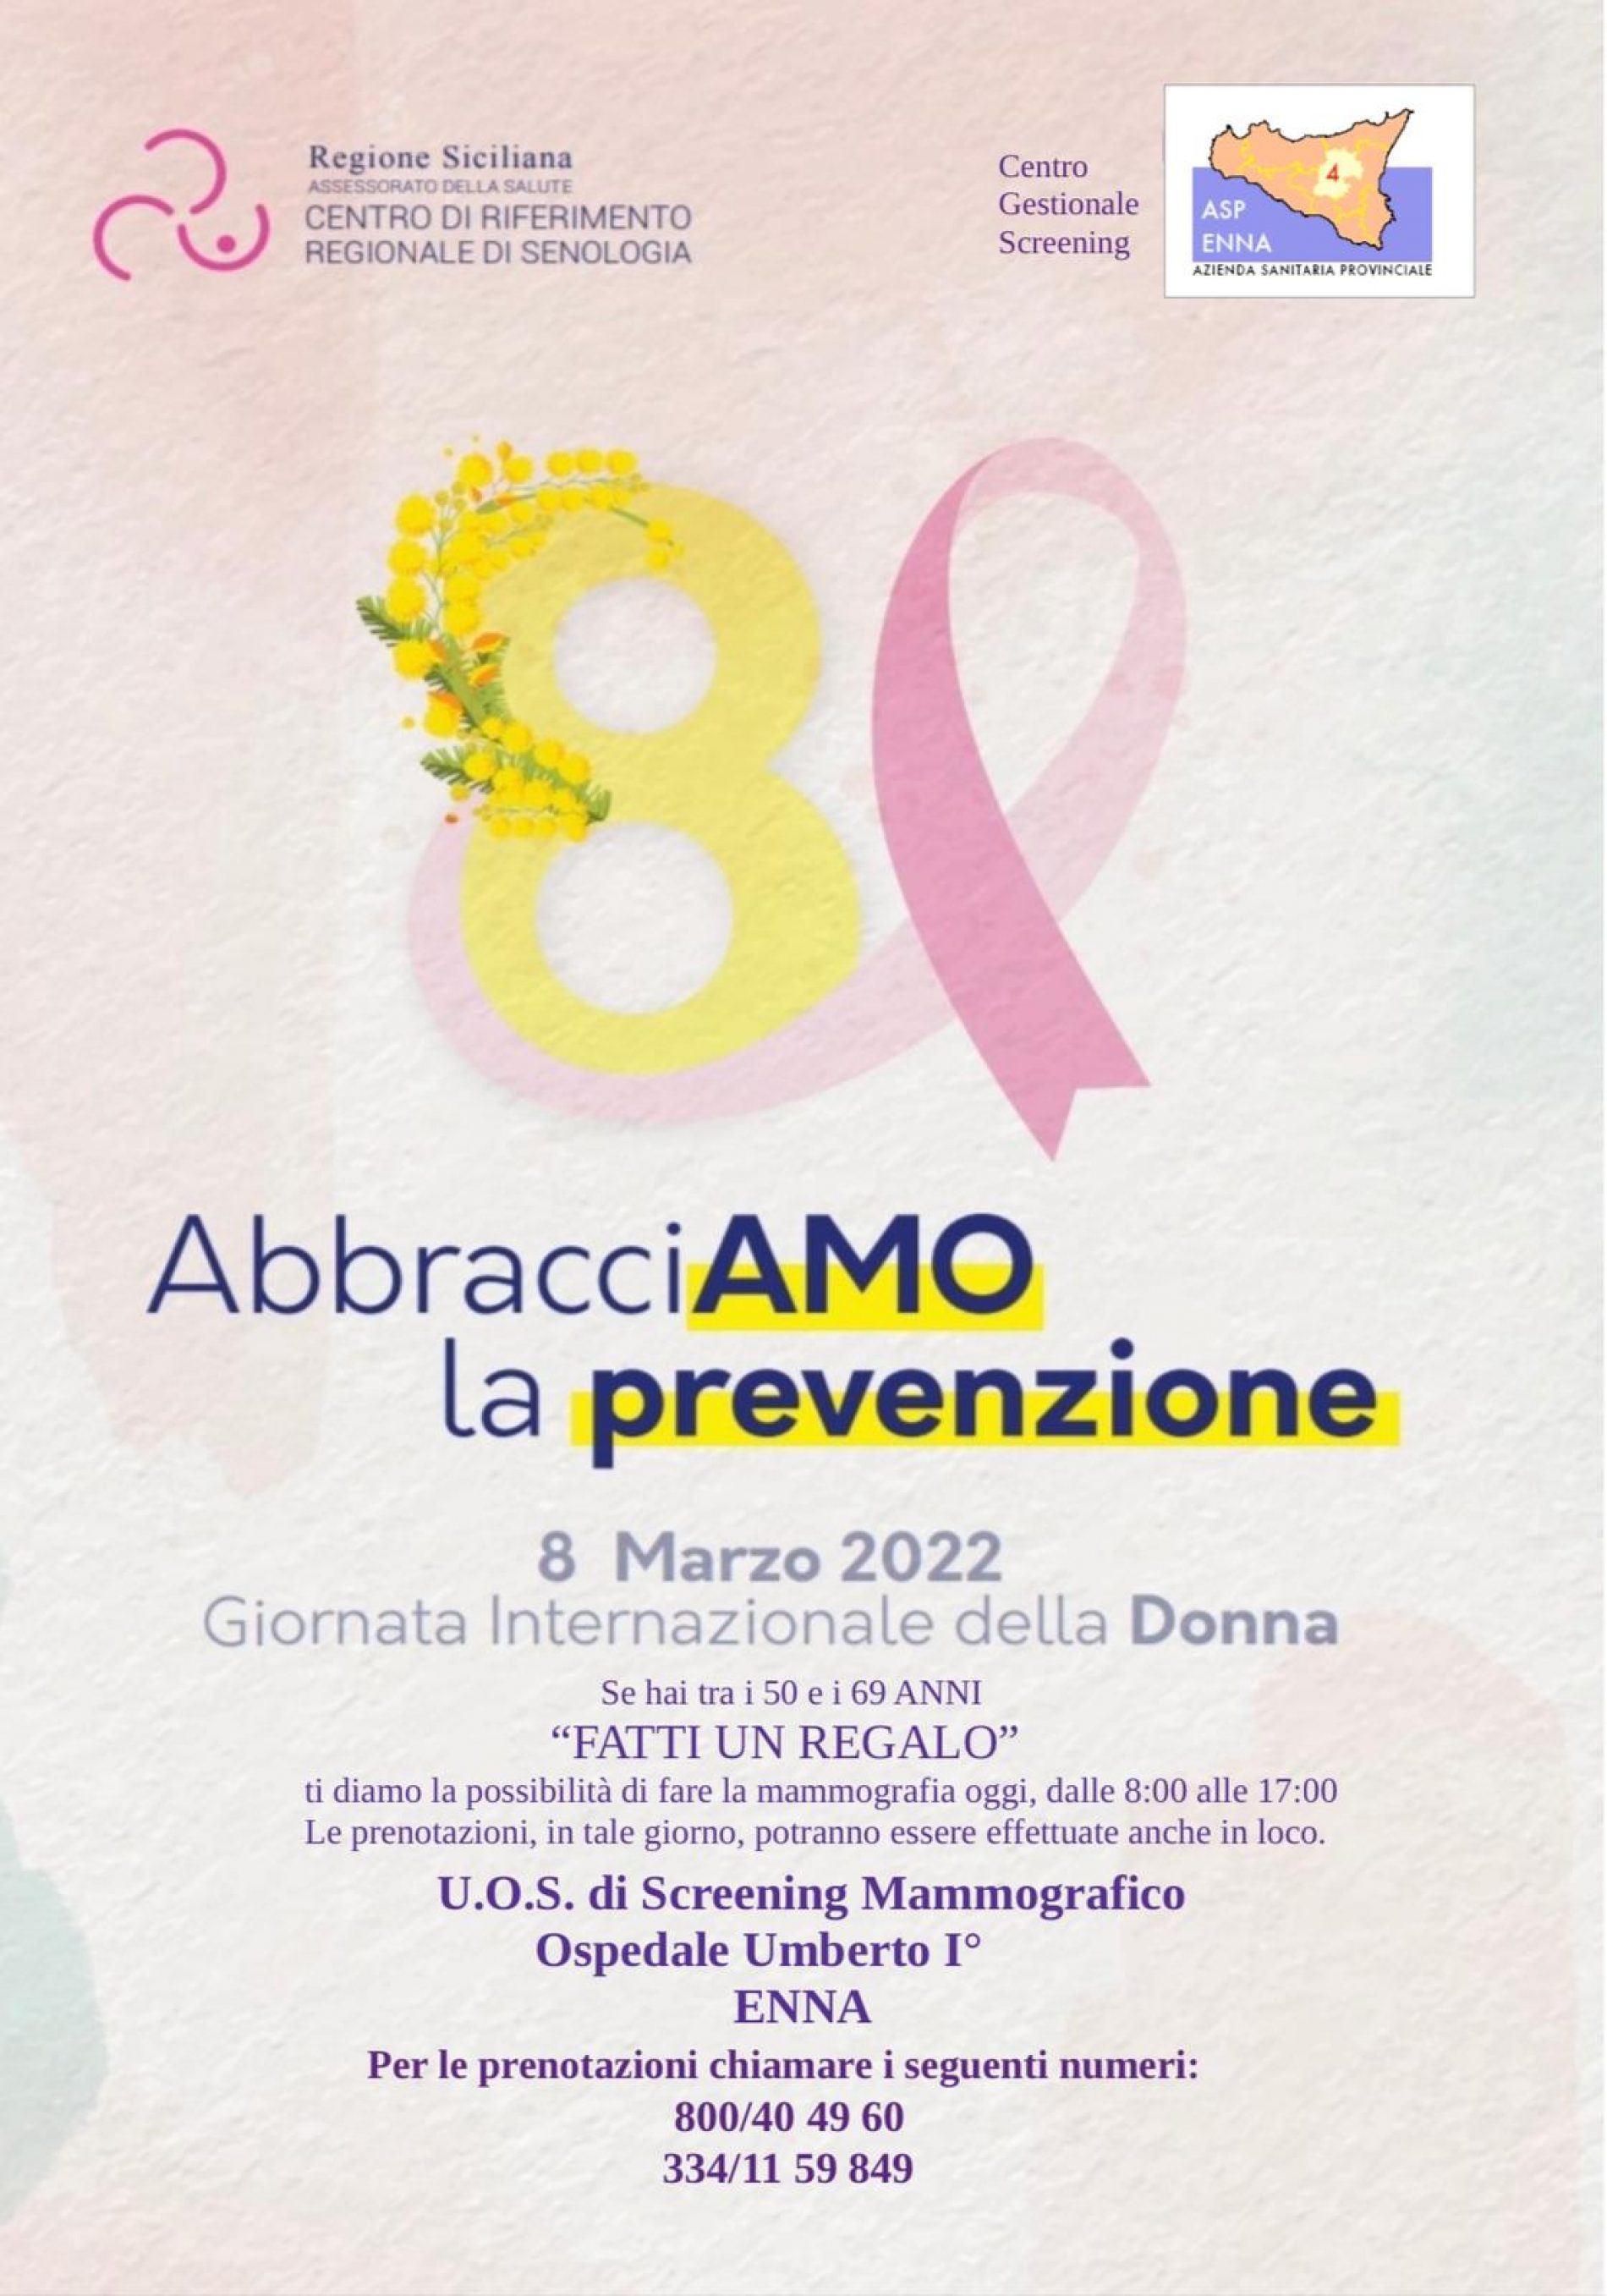 Screening mammografico nella giornata dell’8 marzo 2022 presso l’Ospedale Umberto I di Enna: iniziativa dell’Azienda Sanitaria Provinciale di Enna in occasione della Giornata Internazionale delle donne.